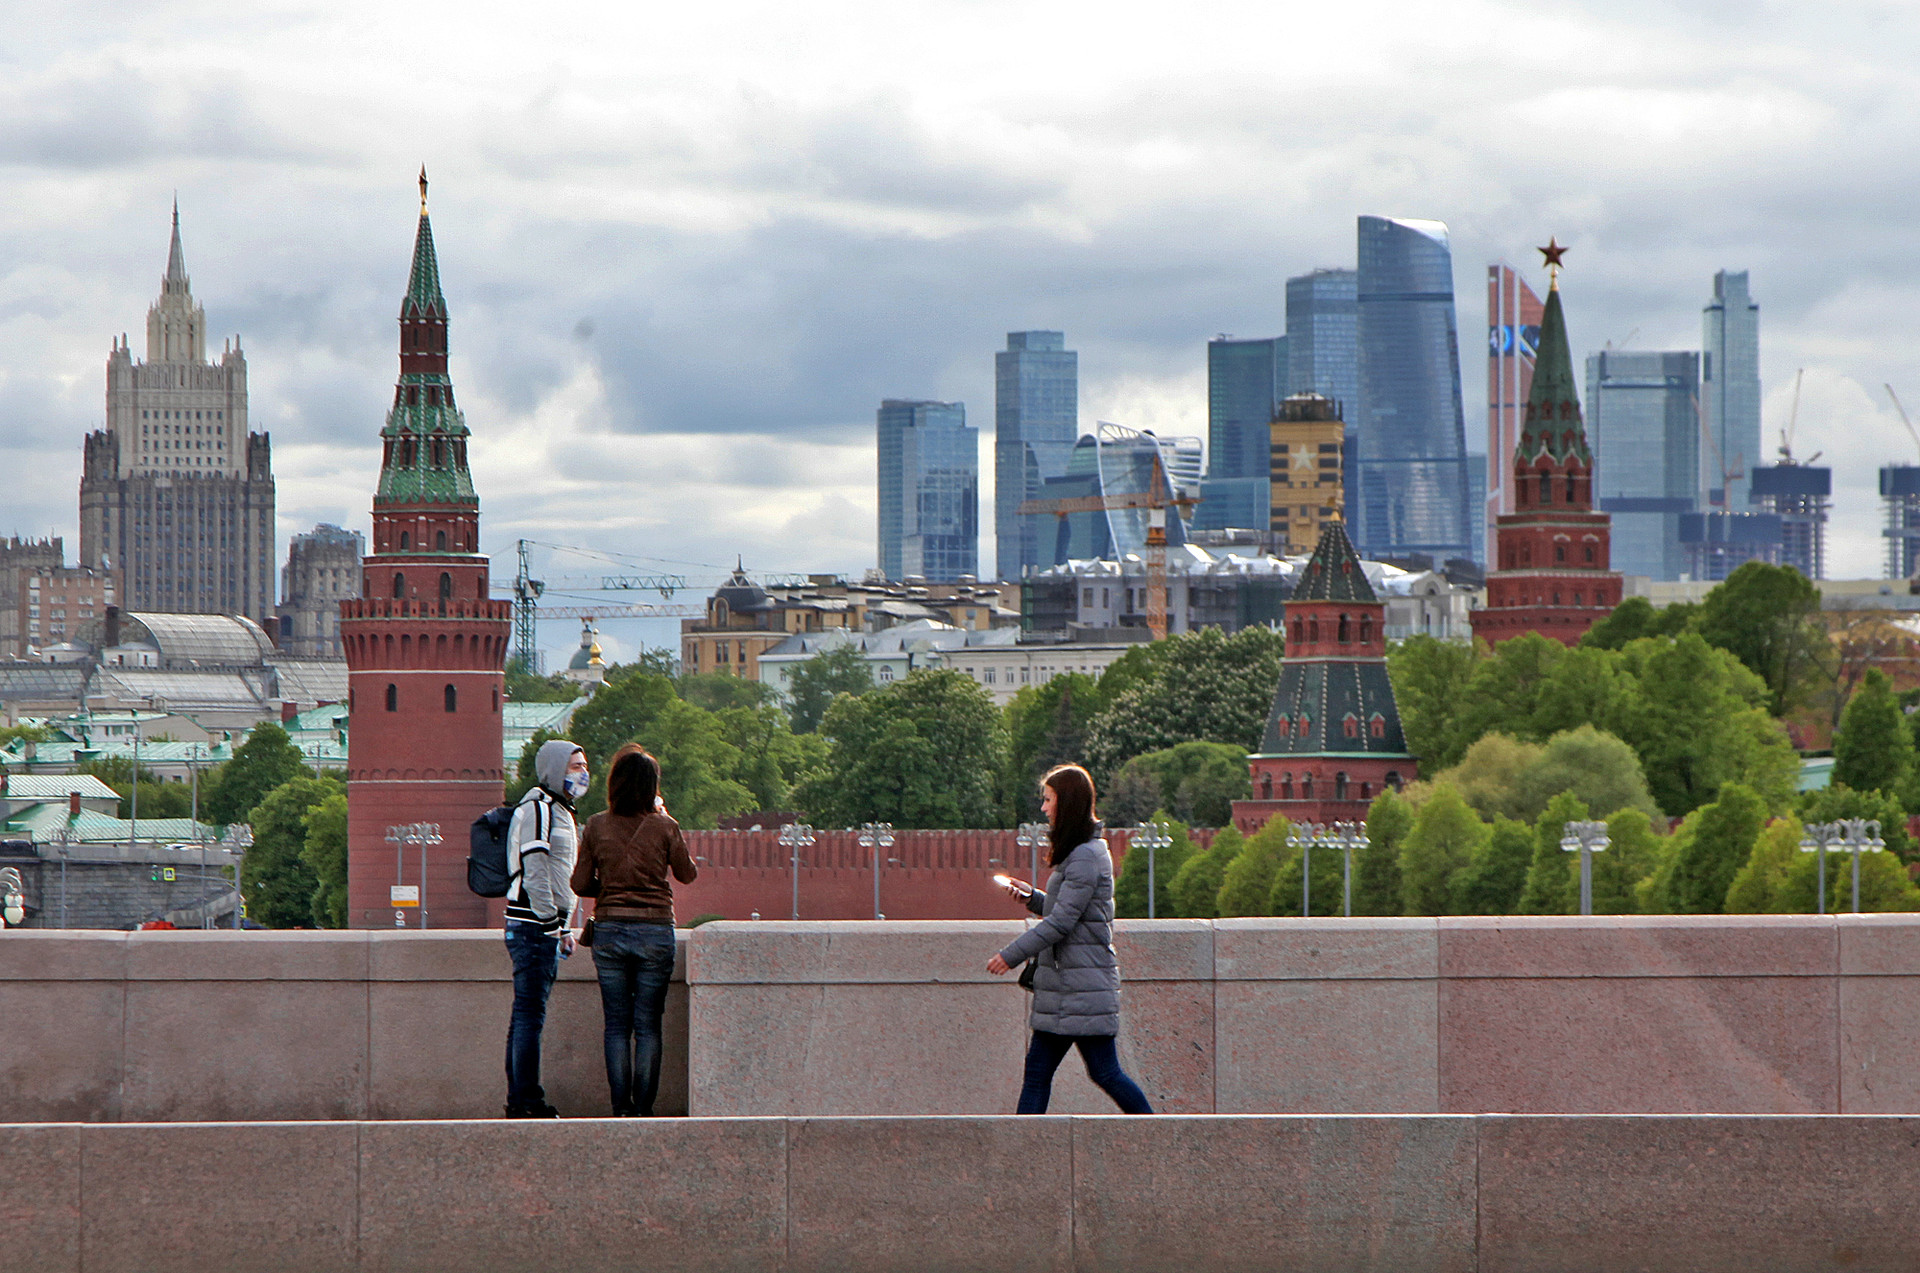 Suasana di Jembatan Moskvoretsky Bolshoy dengan pemandangan Kremlin, Distrik Bisnis Moscow City, dan gedung Kementerian Luar Negeri Rusia  — salah satu dari tujuh gedung kembar Stalin.